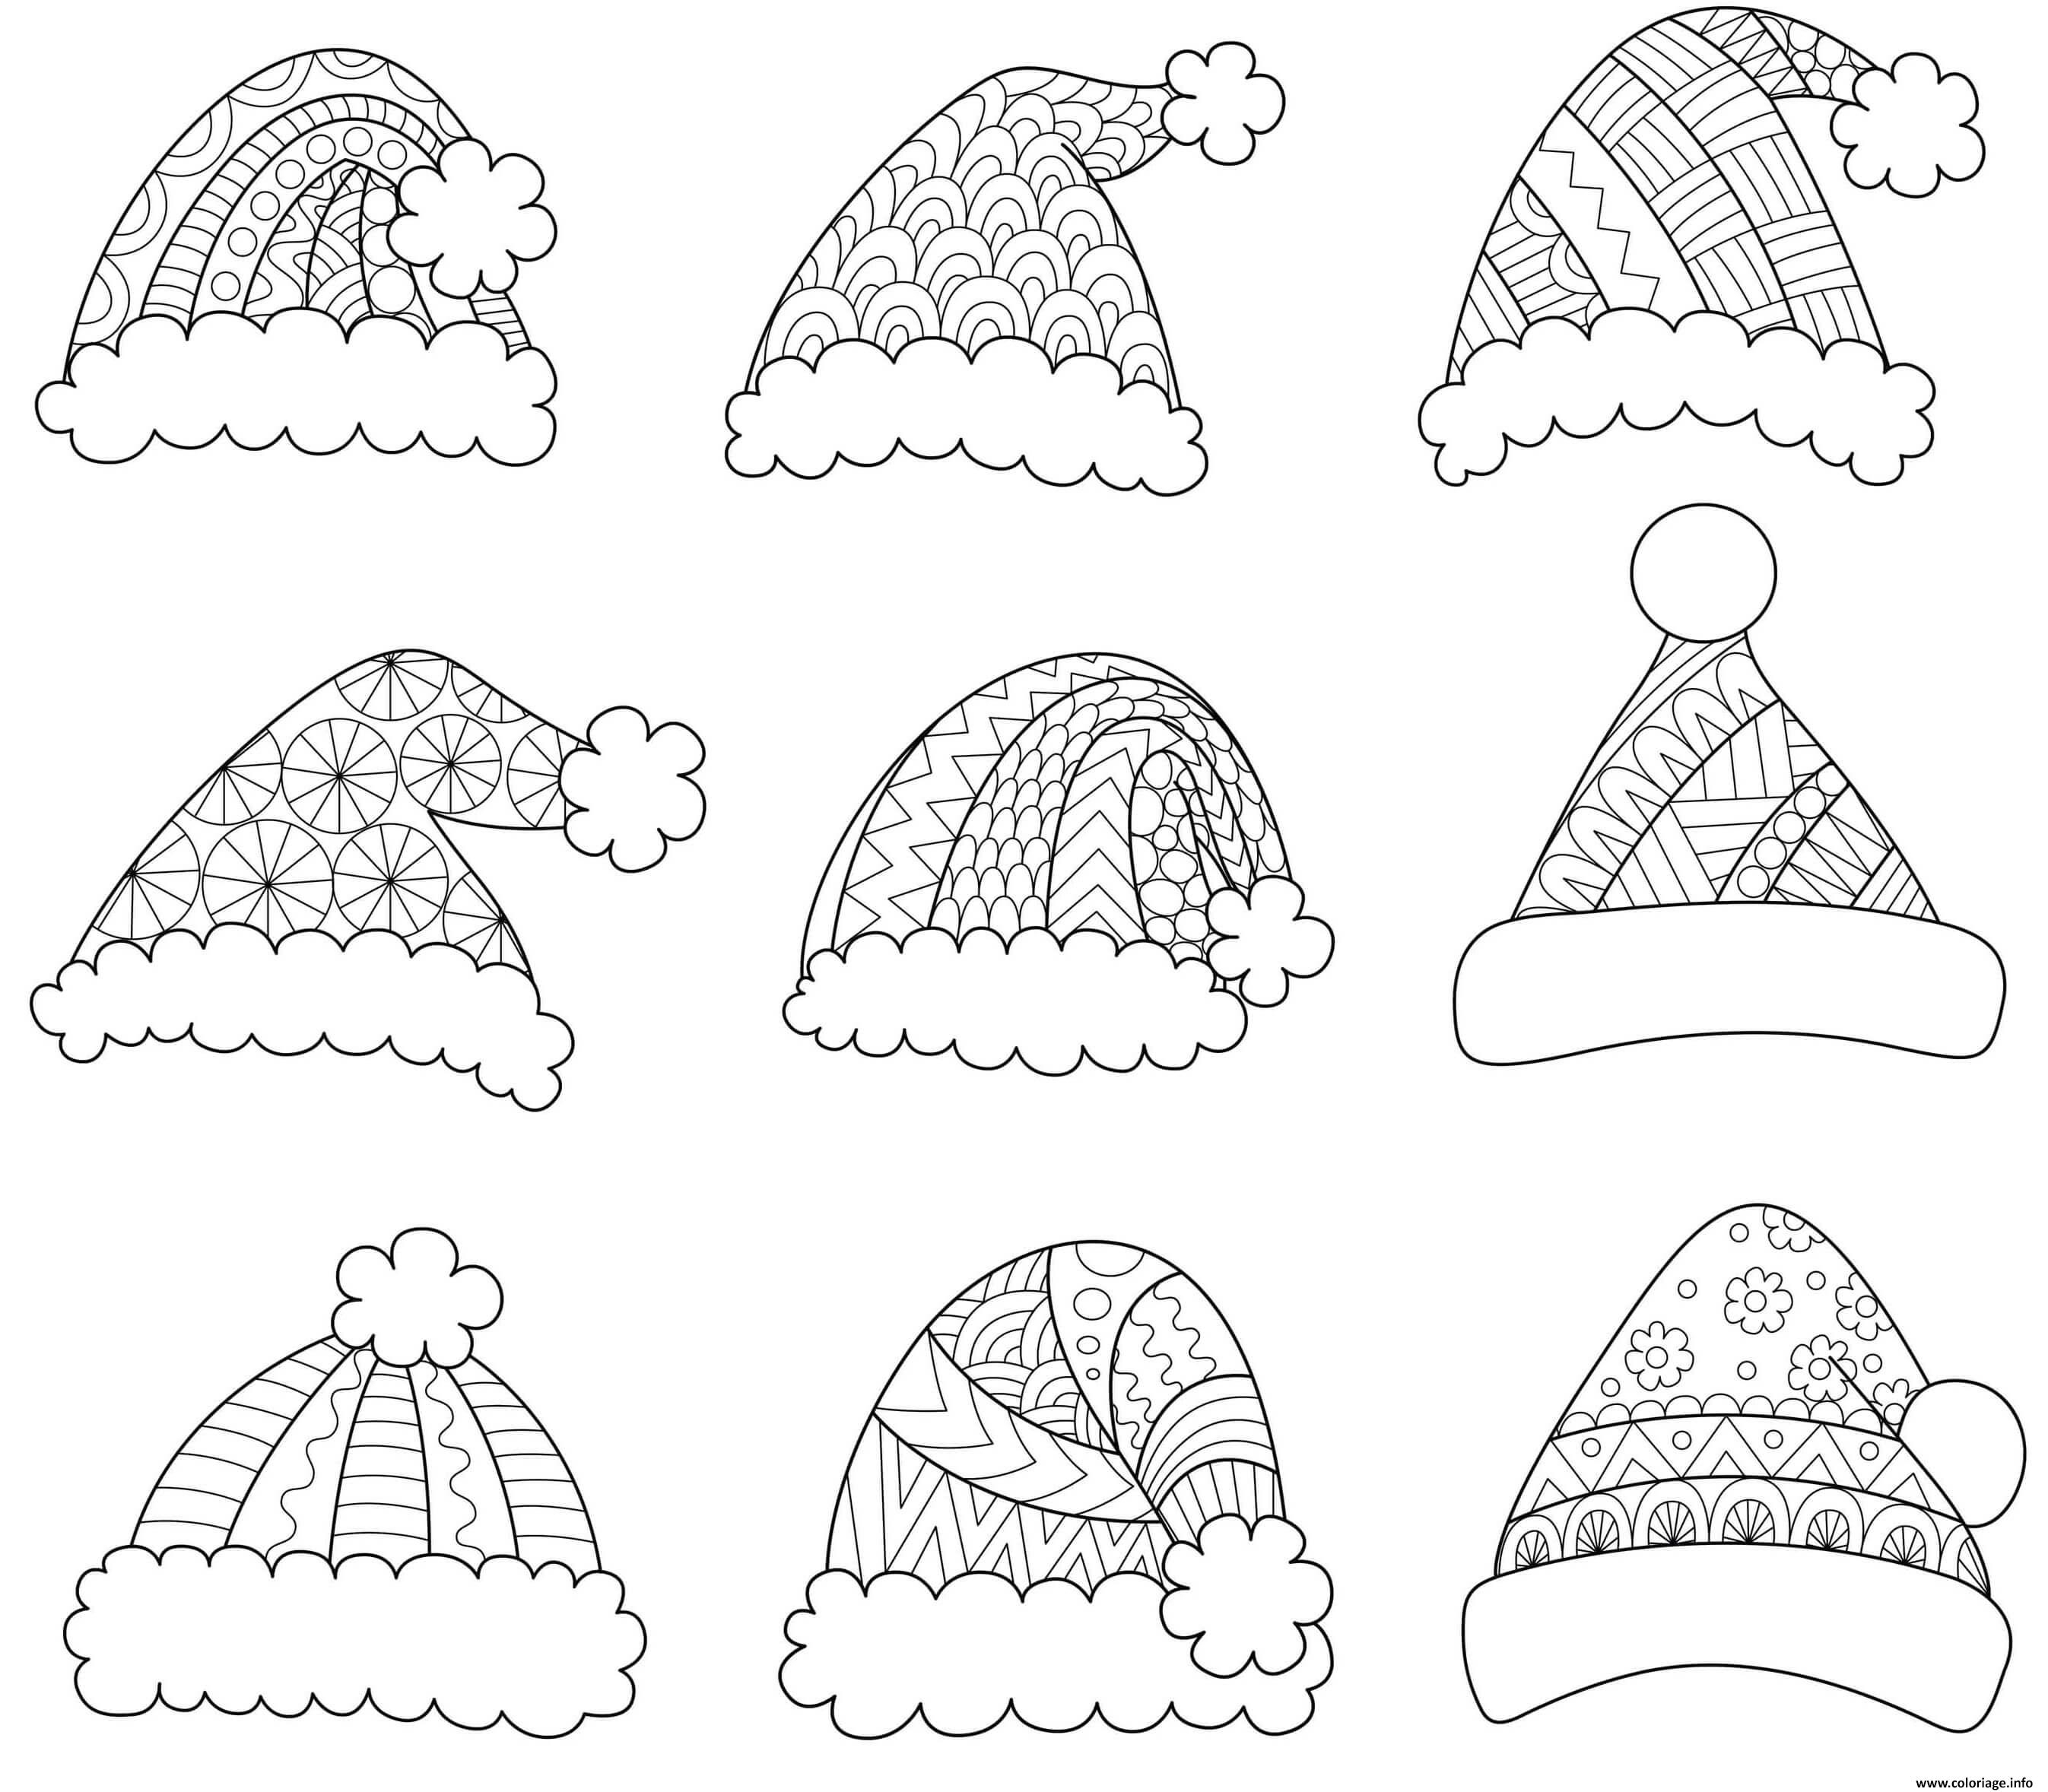 Как сделать Деда Мороза и Снегурочку из бумаги и как сшить новогодние шапку и шарф для игрушки